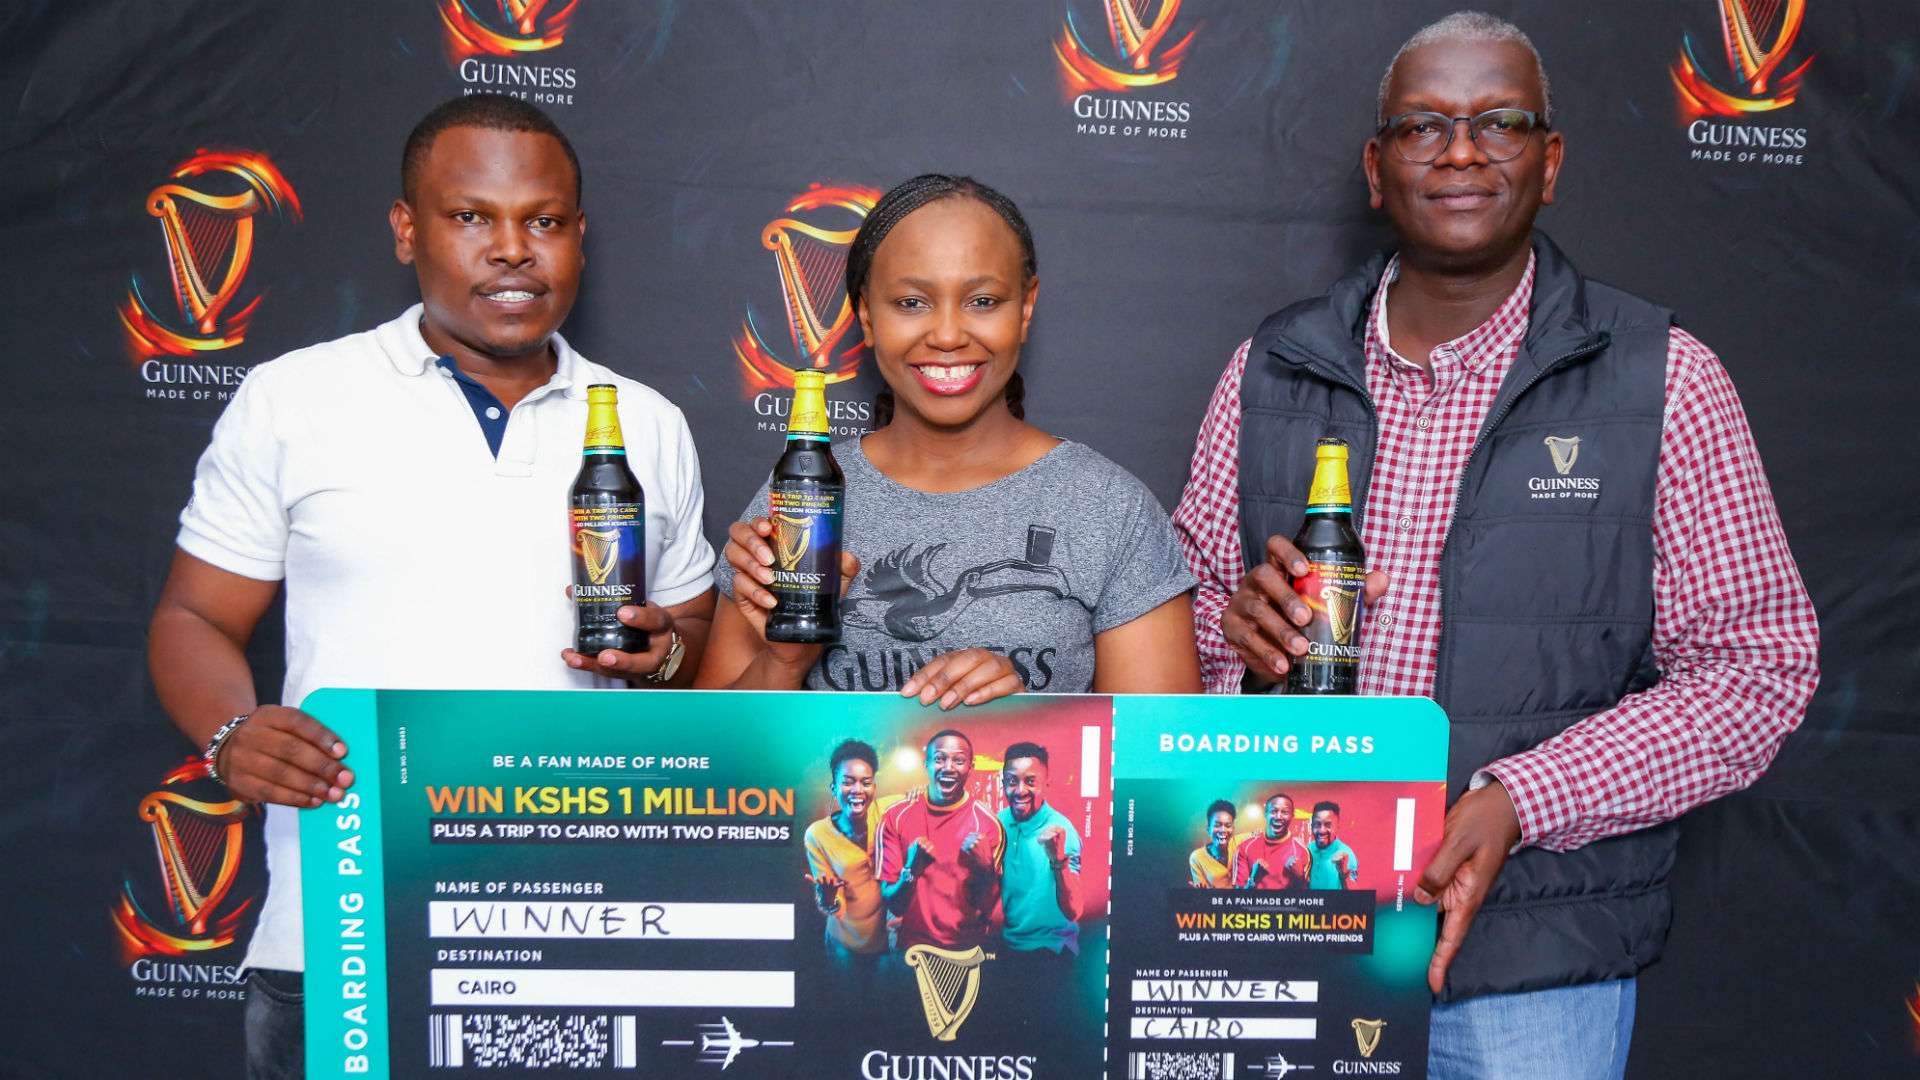 Guinness Brand in Kenya for Afcon.